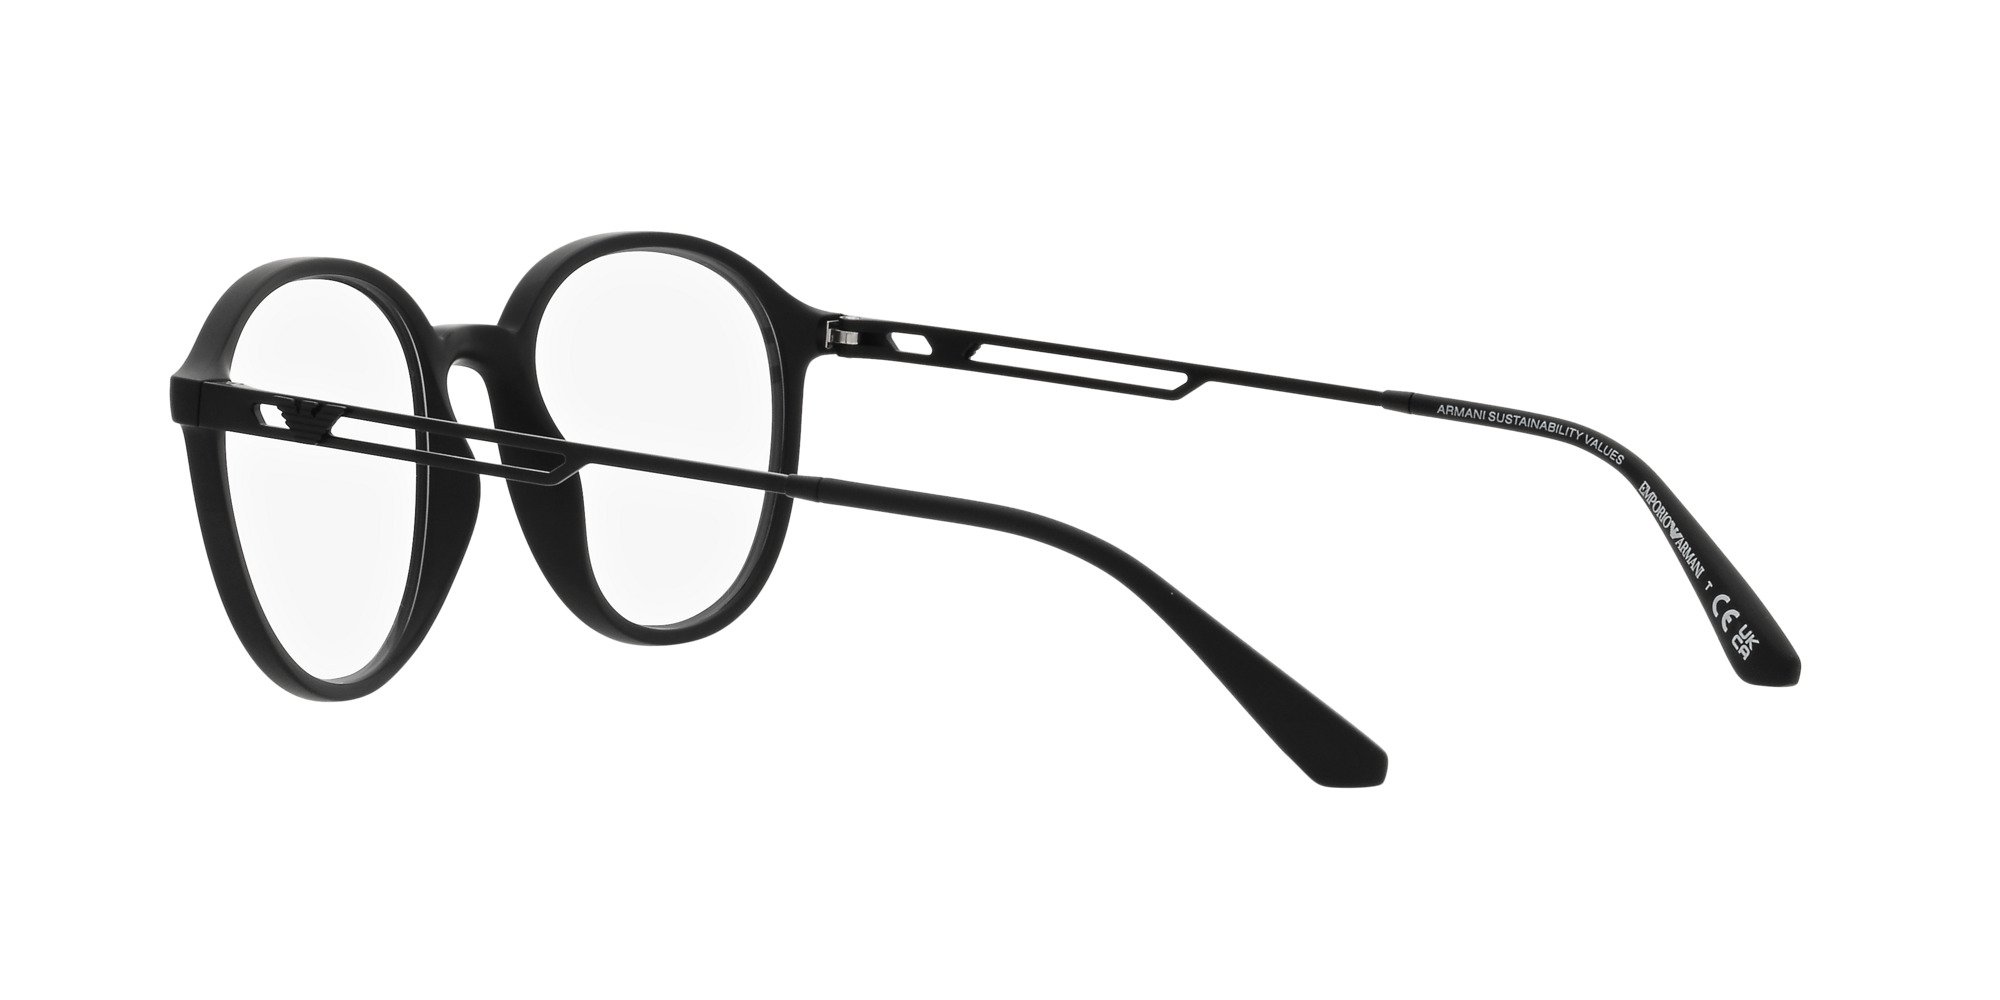 Das Bild zeigt die Korrektionsbrille EA3225 5001 von der Marke Emporio Armani in Schwarz.